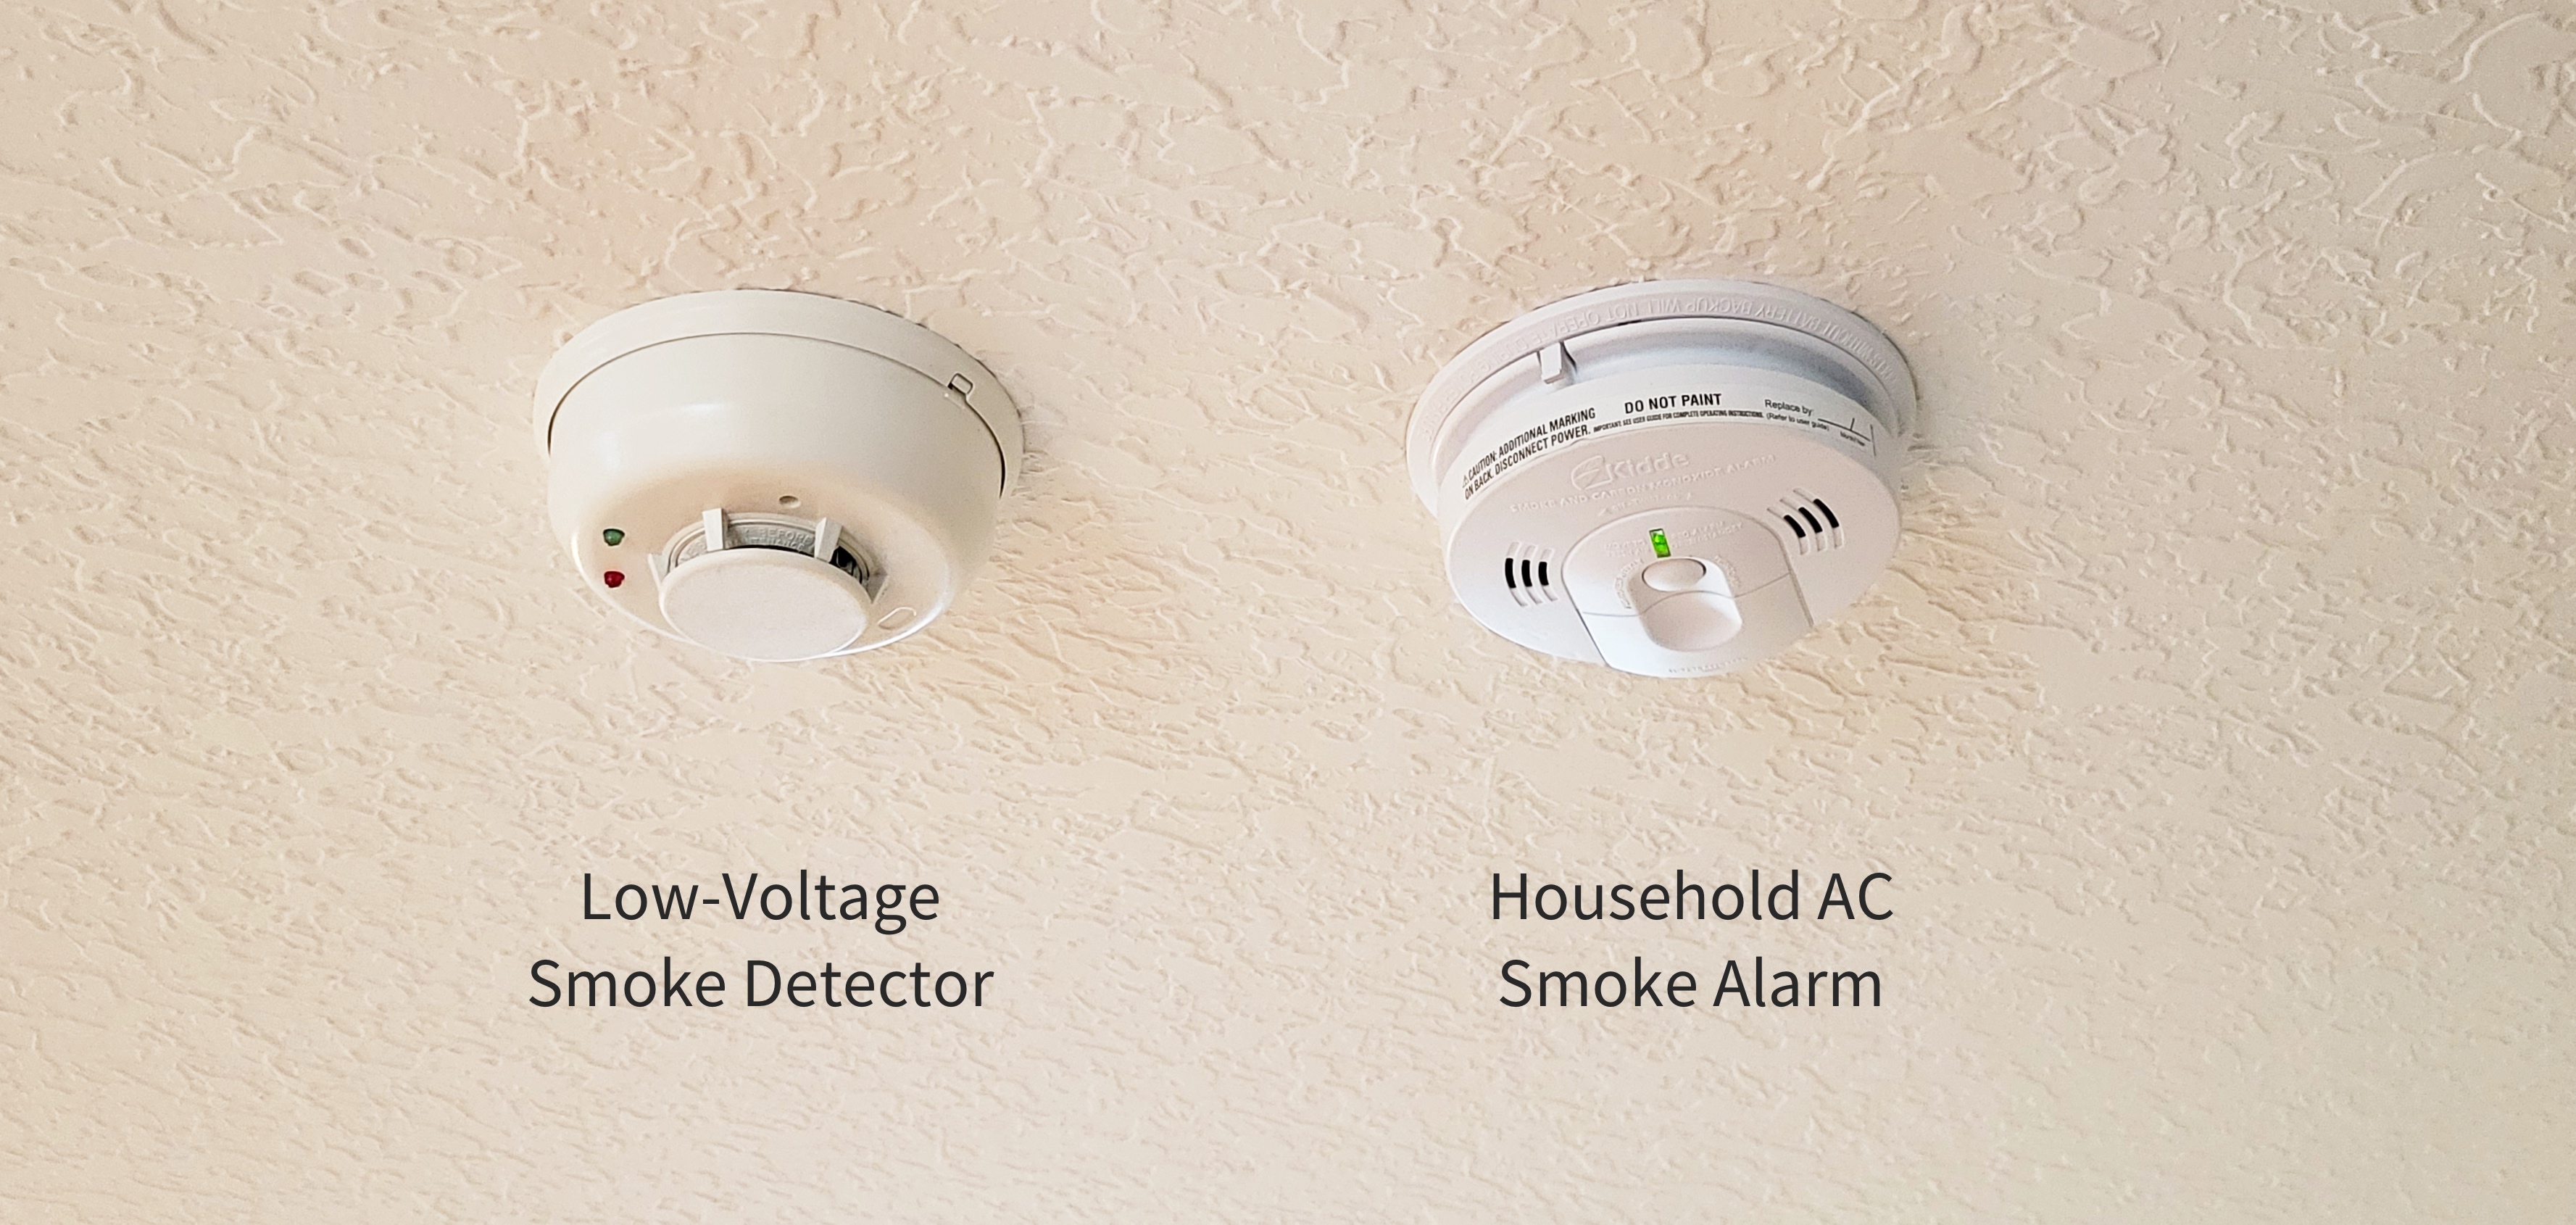 Are Fire Alarms and Smoke Alarms the Same?